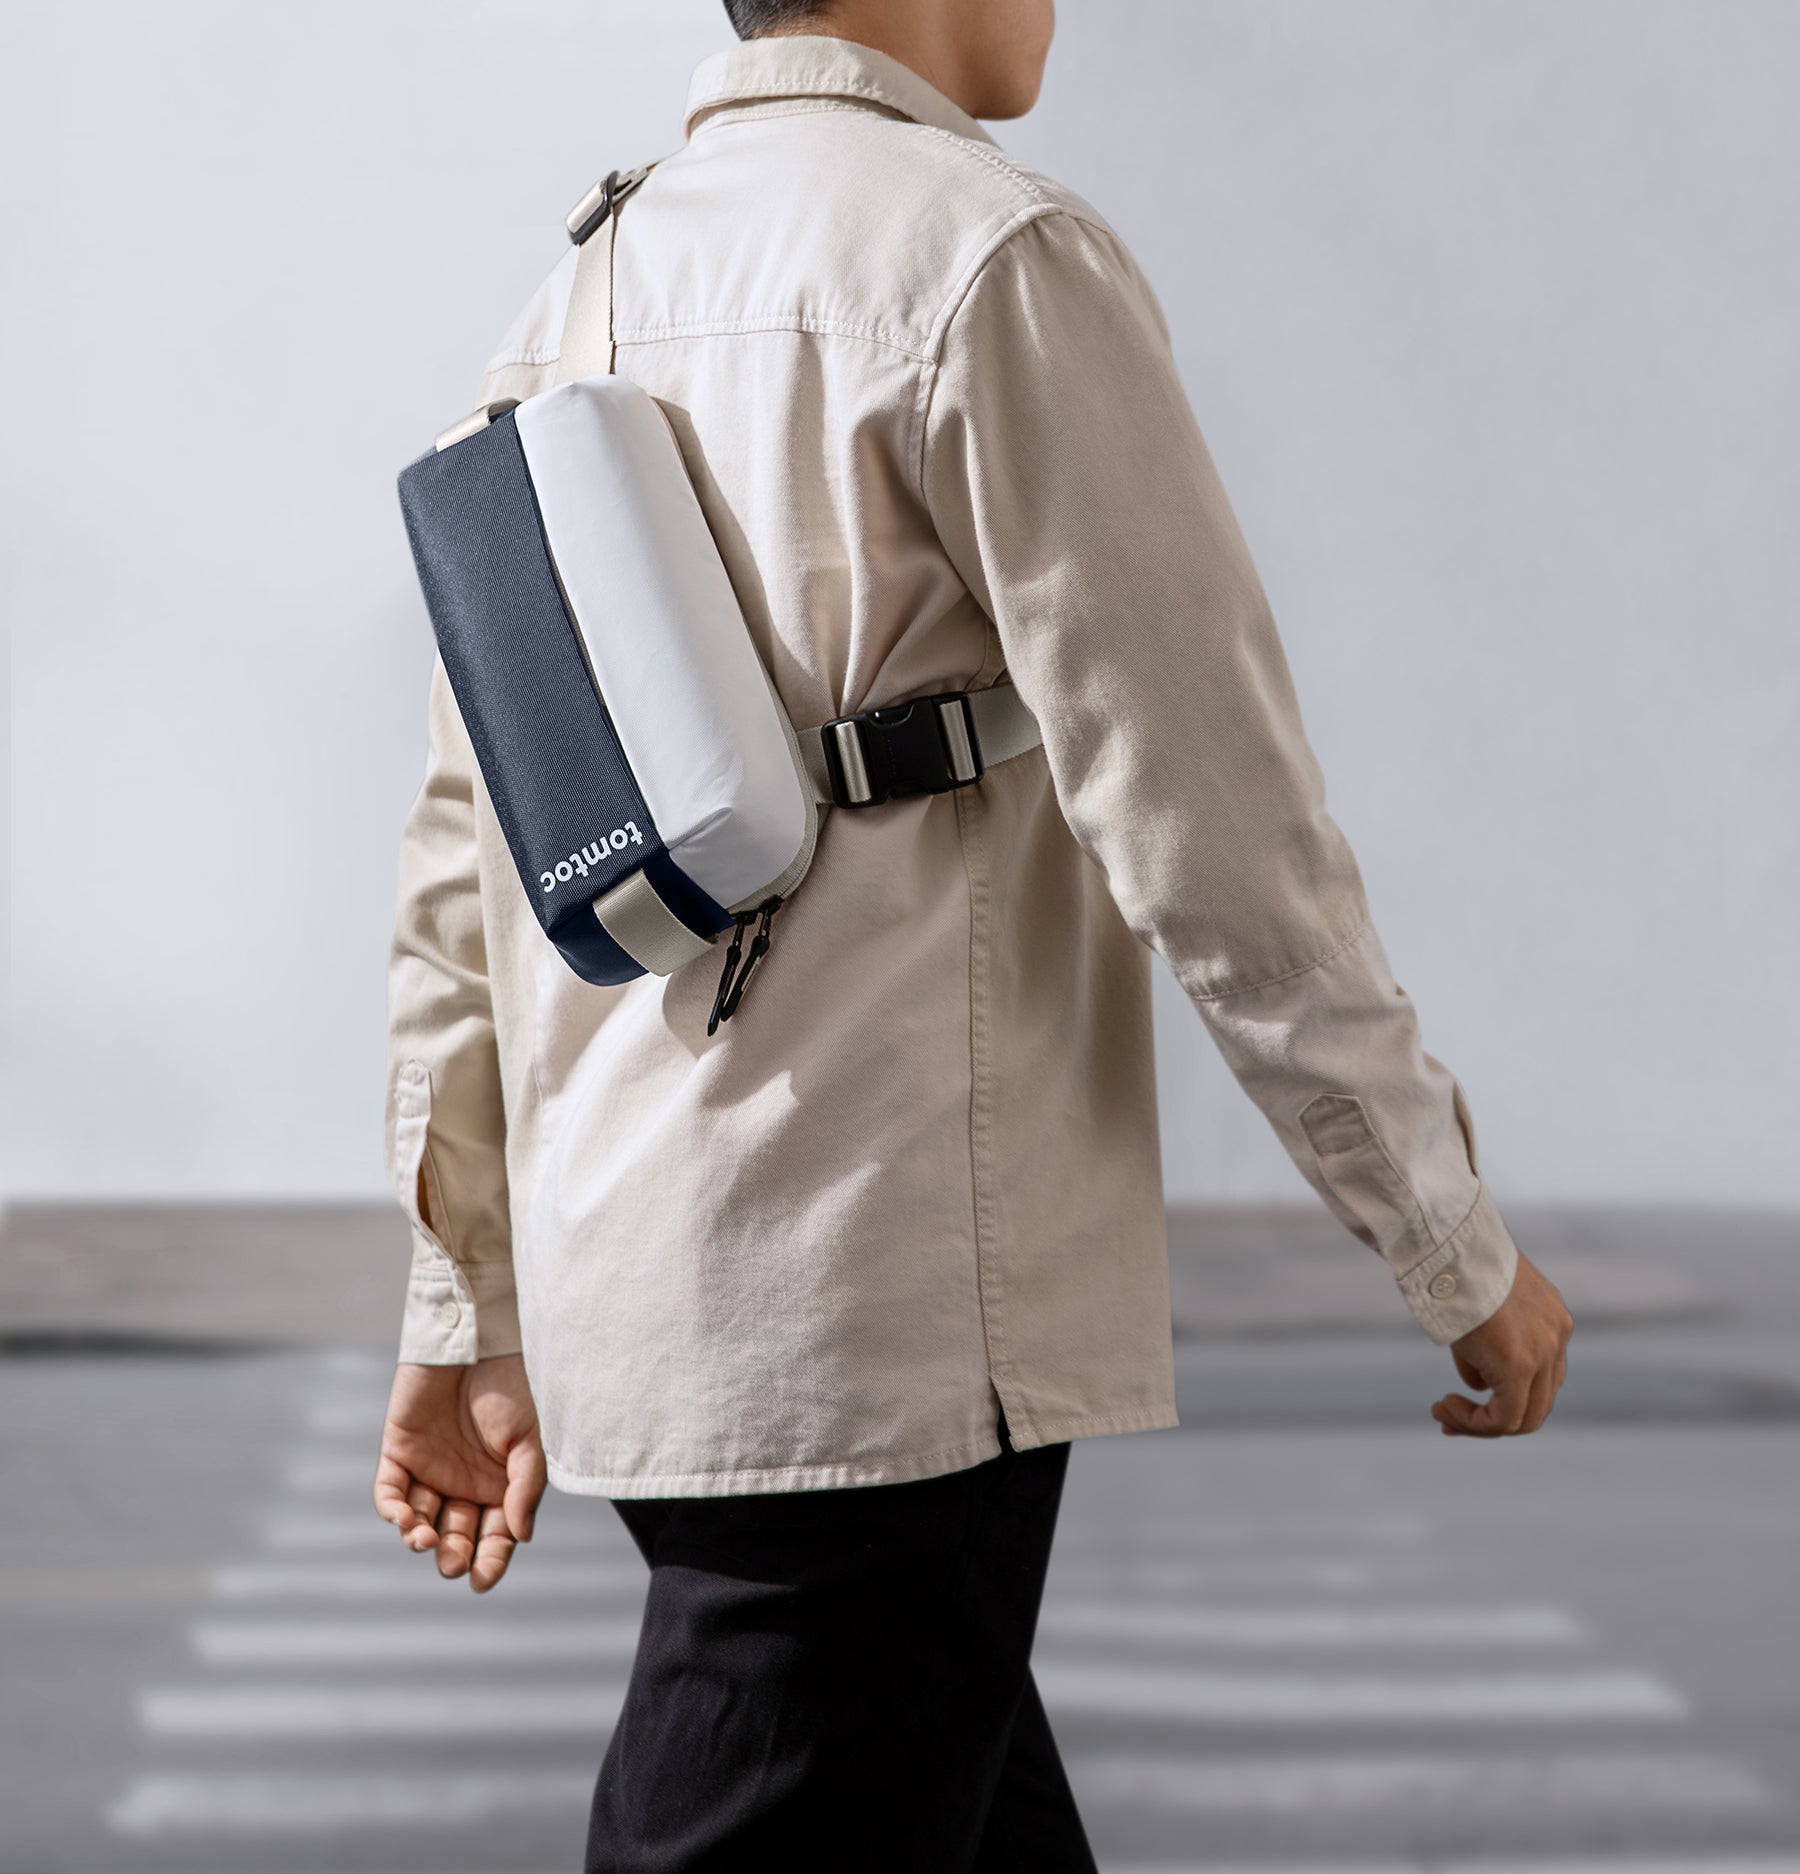 tomtoc Minimalist EDC Sling Men Bag / Crossbody Bag / Shoulder Bag / Chest Bag - Inky Blue